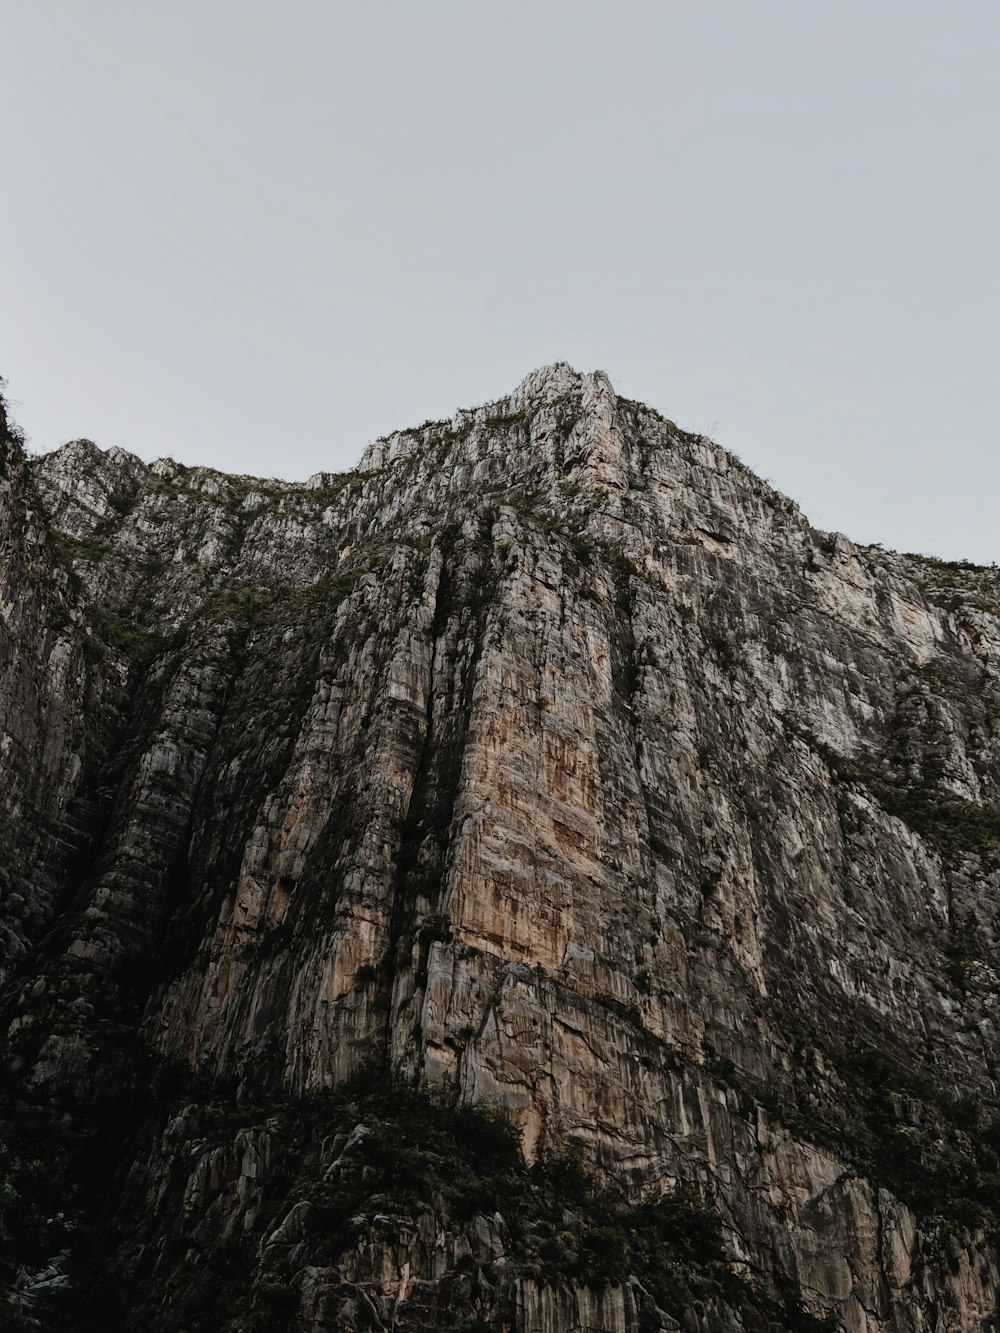 montagna rocciosa marrone e grigia sotto il cielo bianco durante il giorno